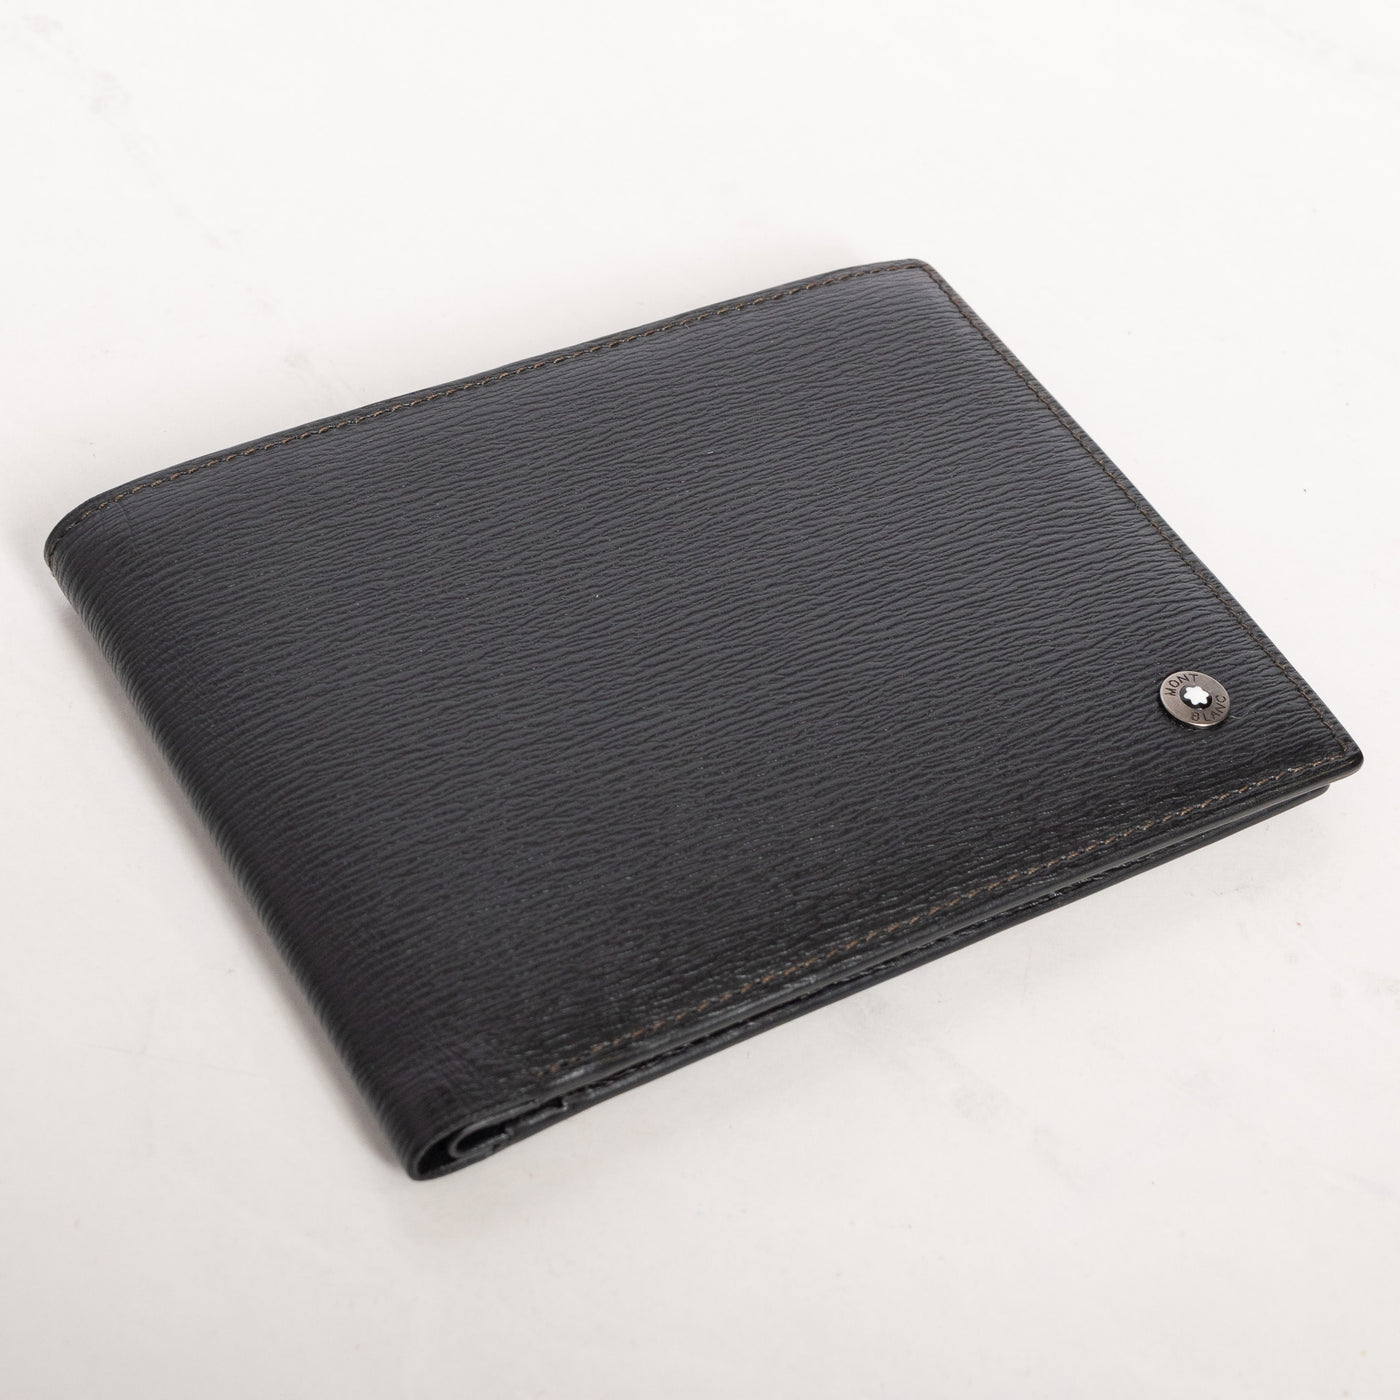 Montblanc Leather Goods Westside 4810 Black 8cc Wallet 8372